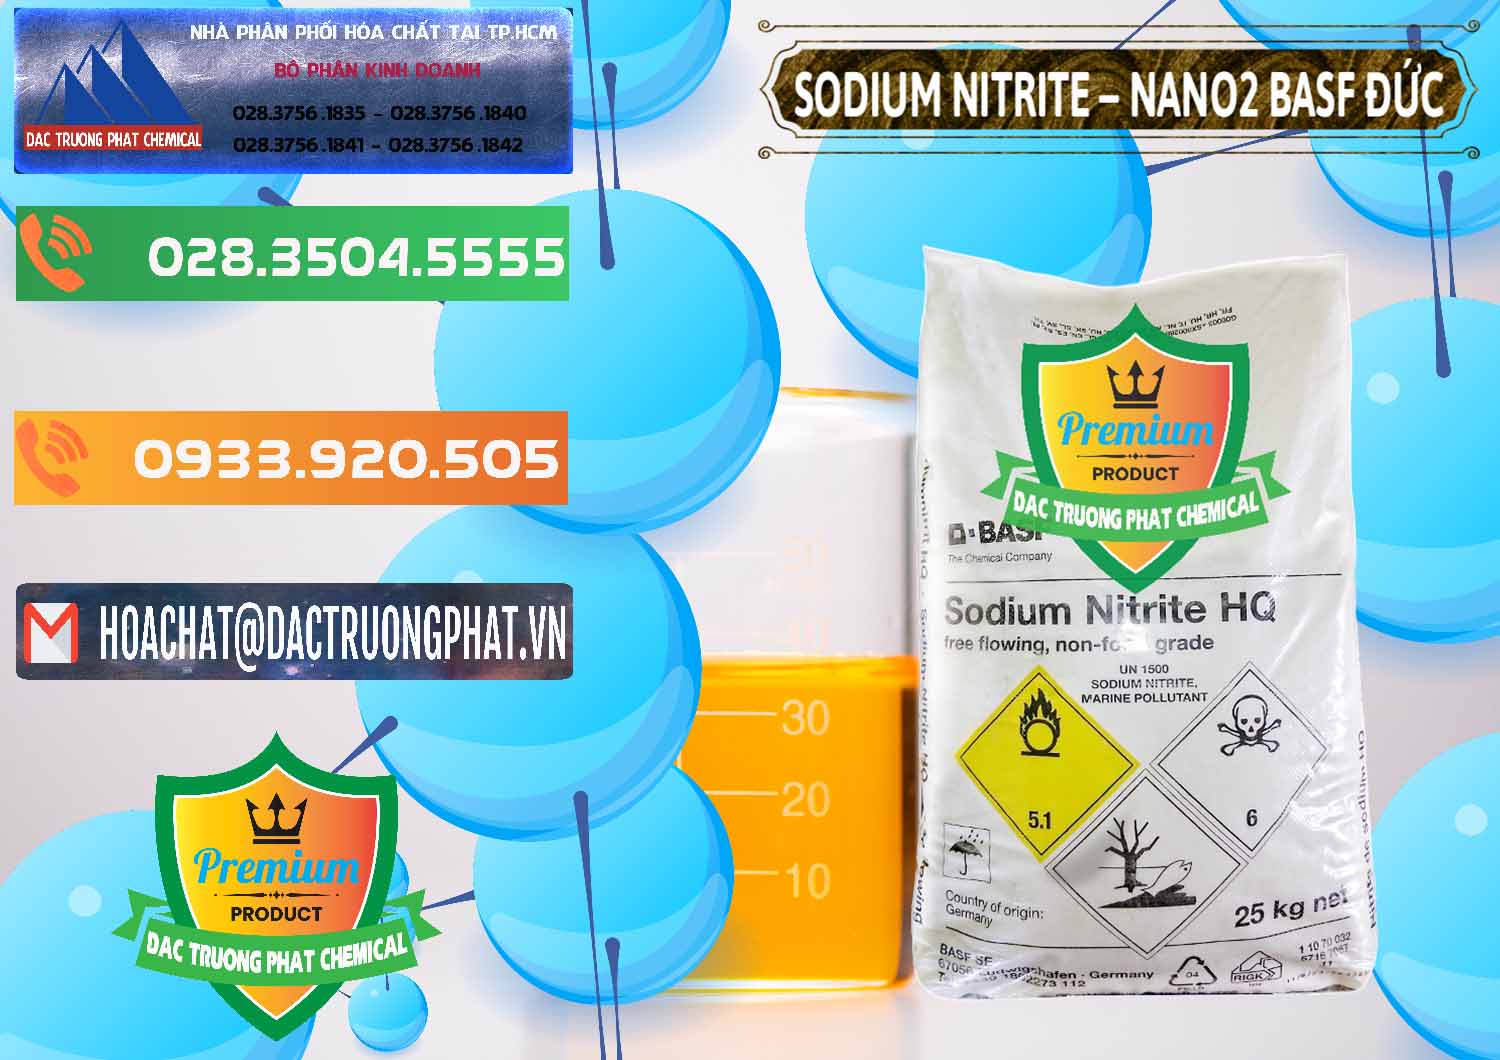 Nơi chuyên bán và cung cấp Sodium Nitrite - NANO2 Đức BASF Germany - 0148 - Cty chuyên kinh doanh & cung cấp hóa chất tại TP.HCM - hoachatxulynuoc.com.vn